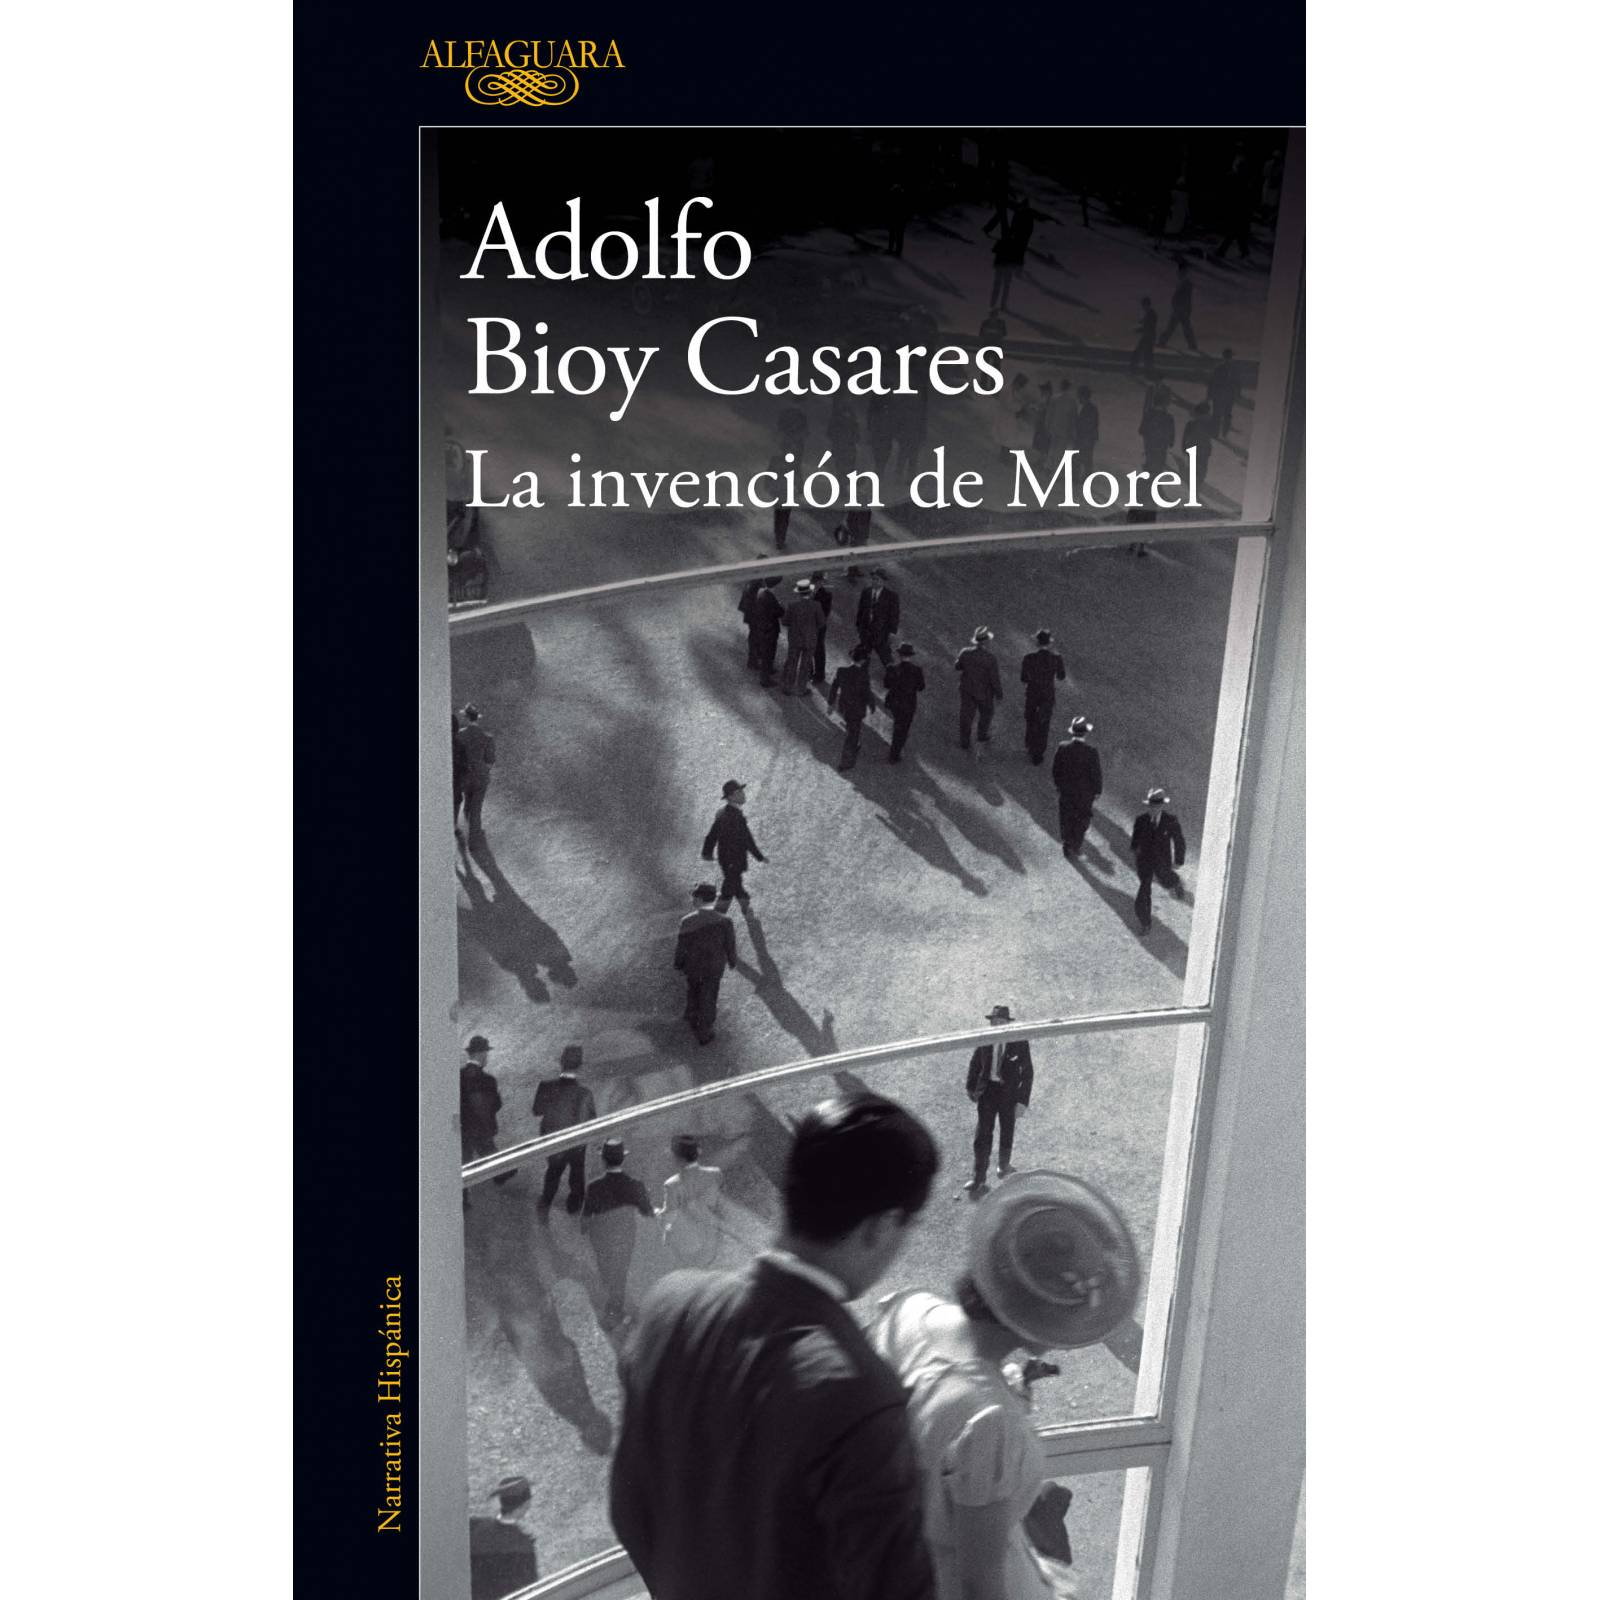 La invención de More lAutor Bioy Casares, Adolfo